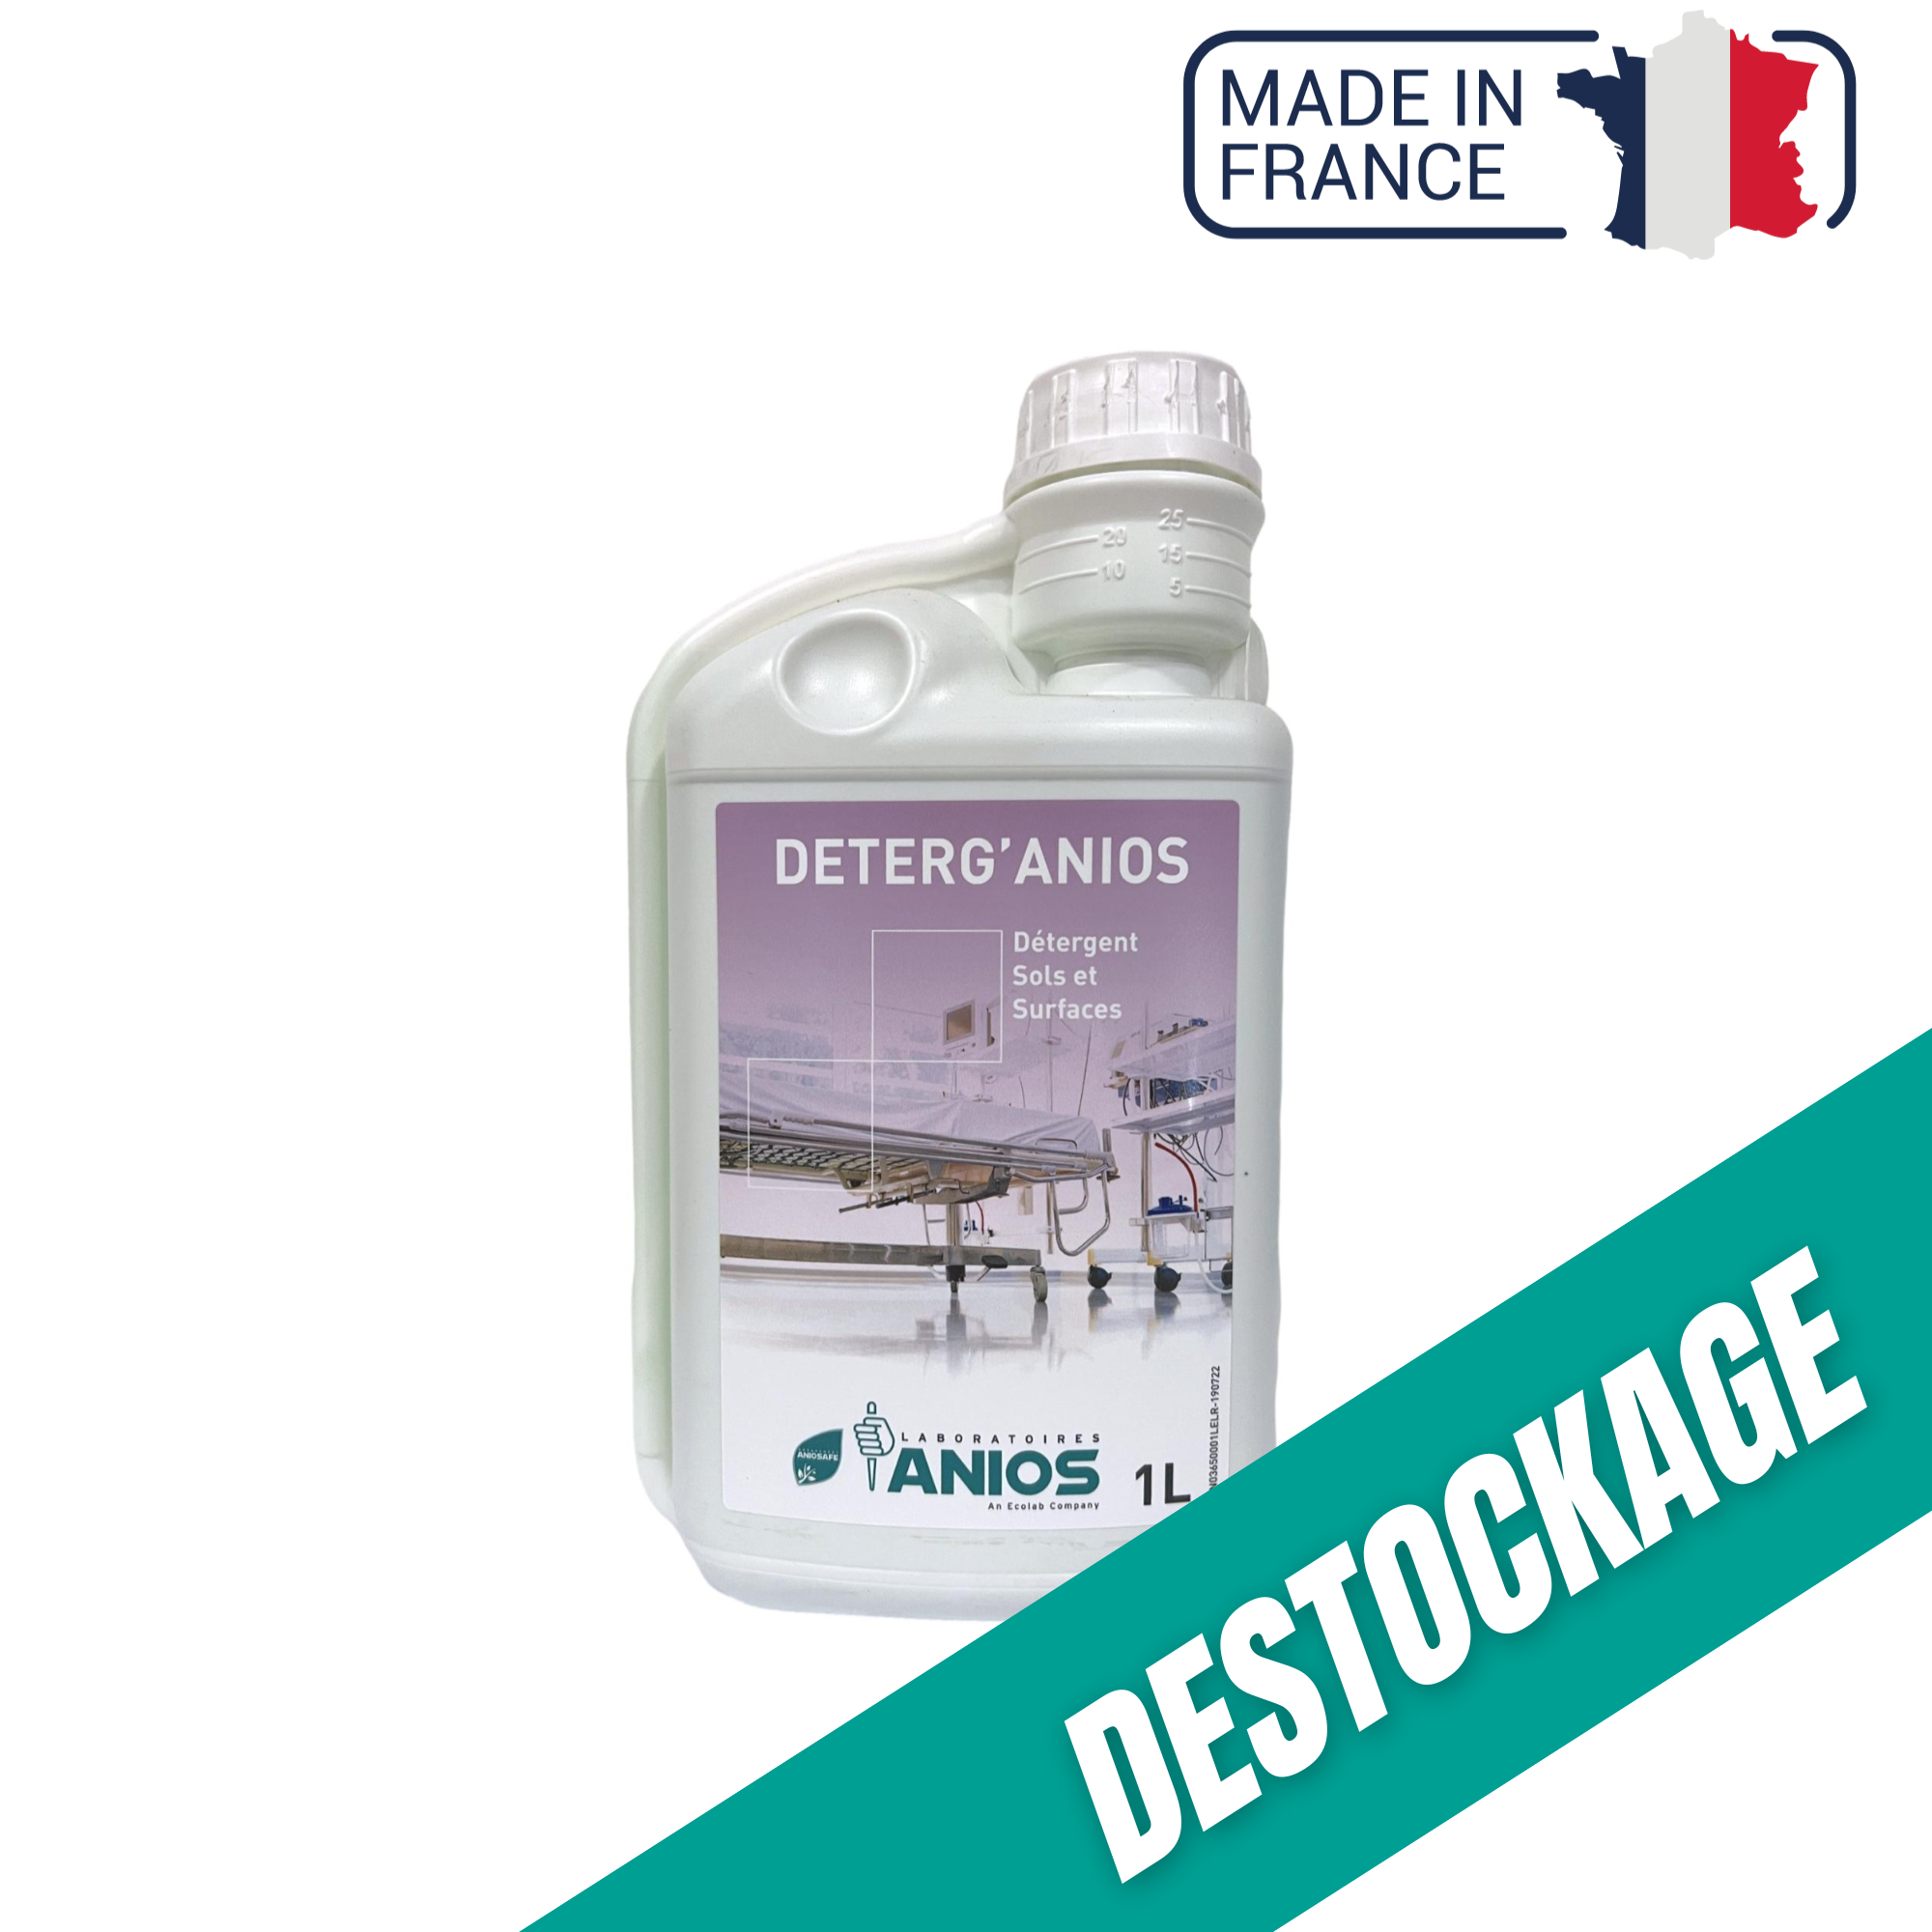 Deterg'anios - Sols et Surfaces - Effet mouillant, dispersant et solubilisant - 1 L - Anios // Destockage